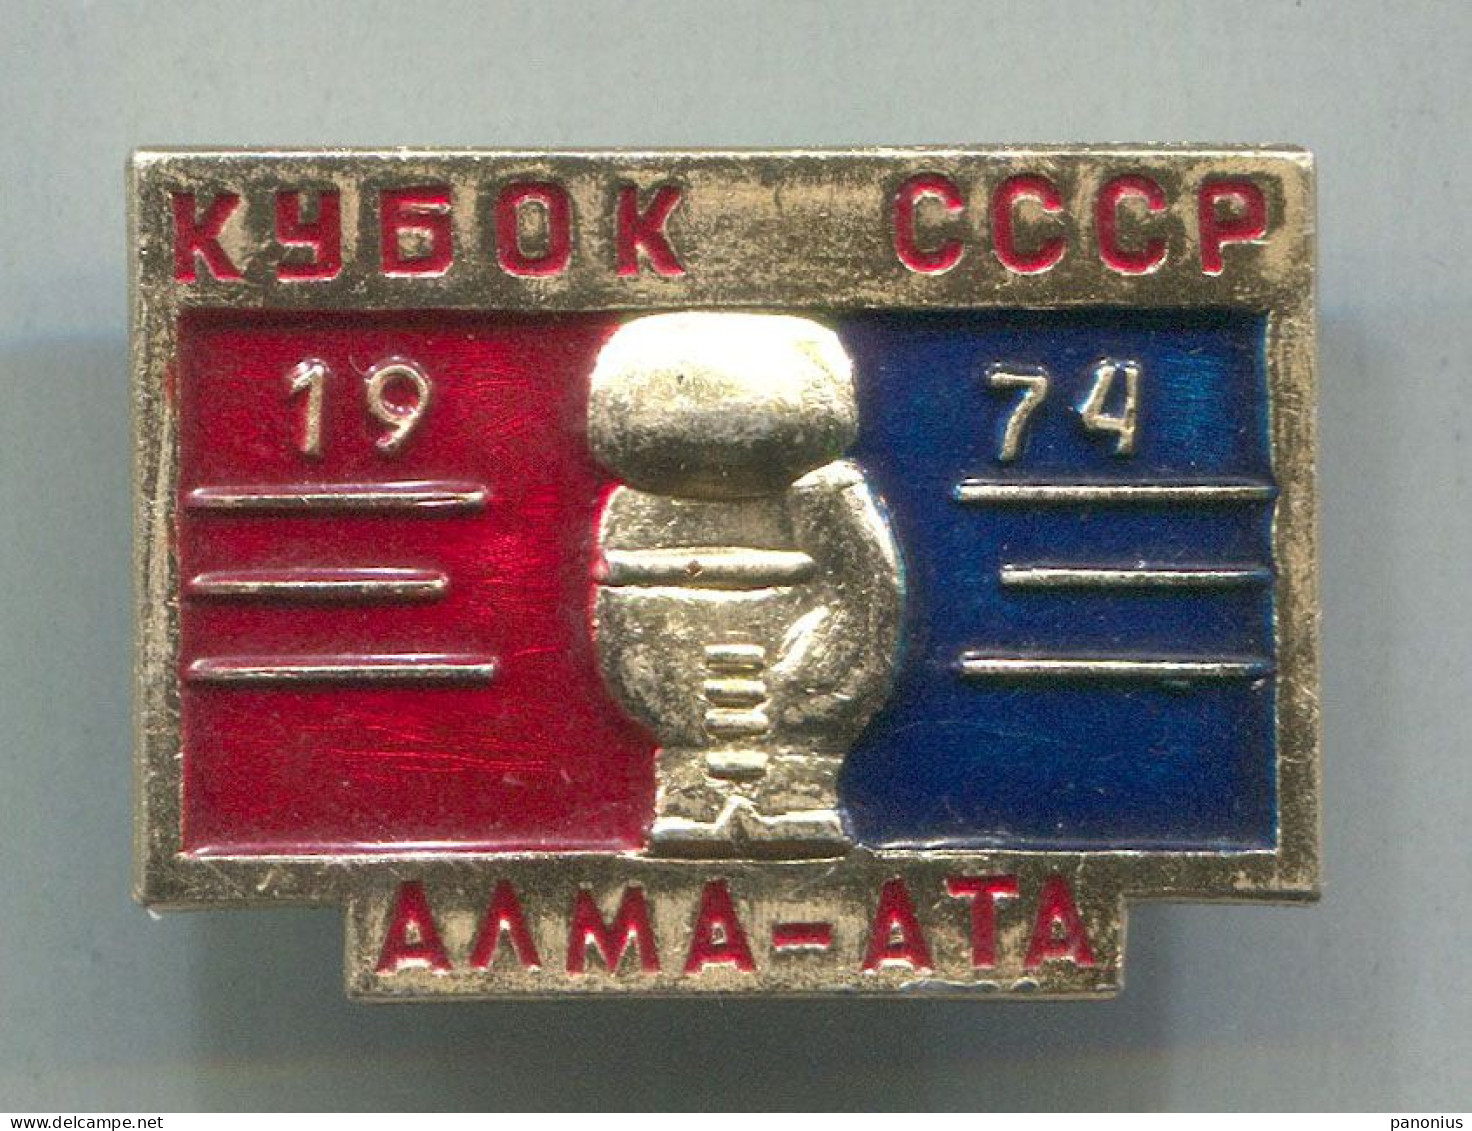 Boxing Box Boxen Pugilato - Alma - Ata Kazakhstan 1974. USSR Russia, Vintage  Pin  Badge  Abzeichen - Boksen